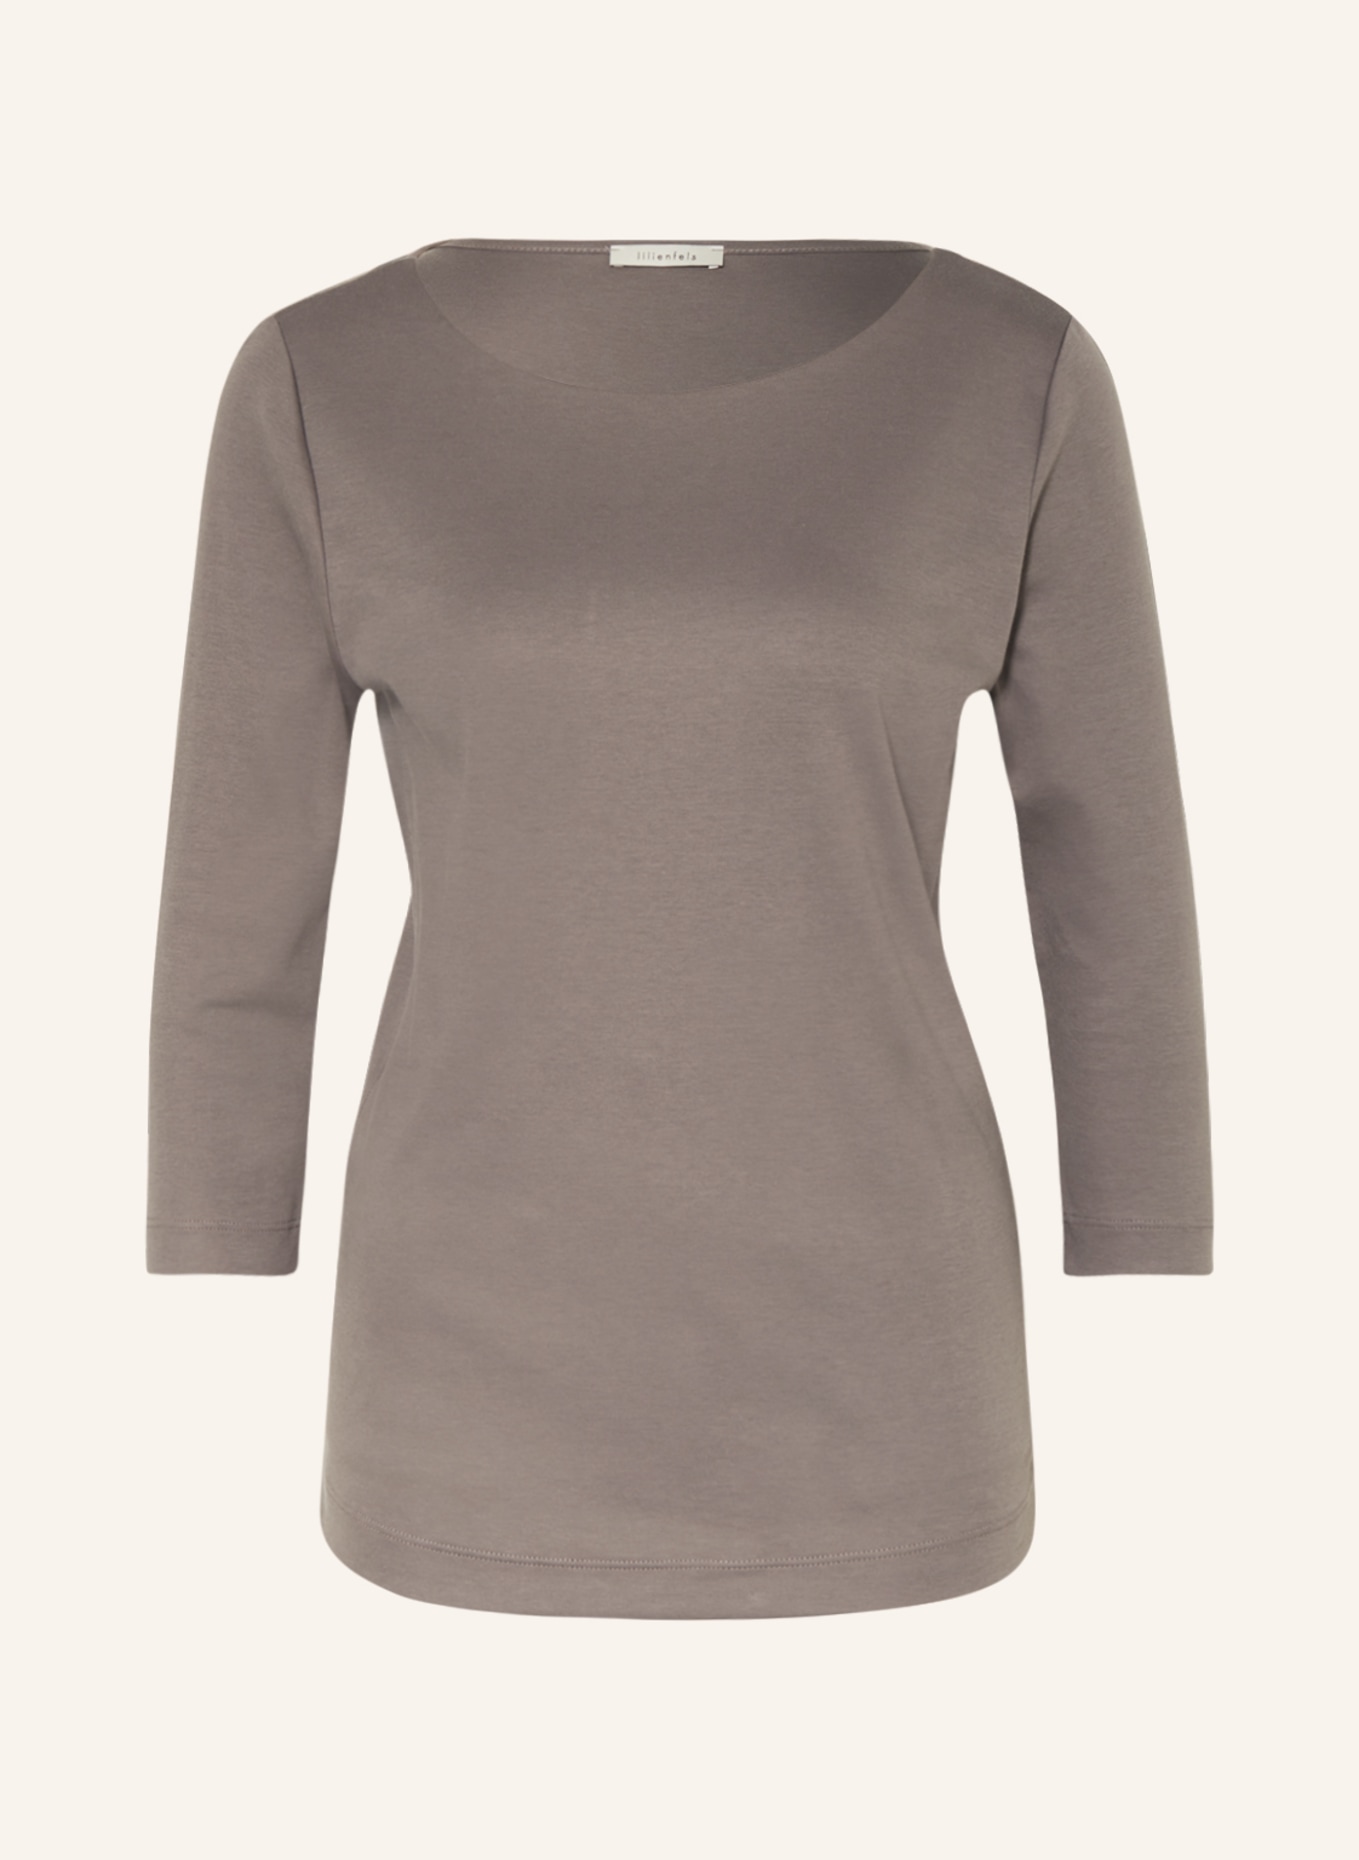 lilienfels Shirt mit 3/4-Arm, Farbe: TAUPE (Bild 1)